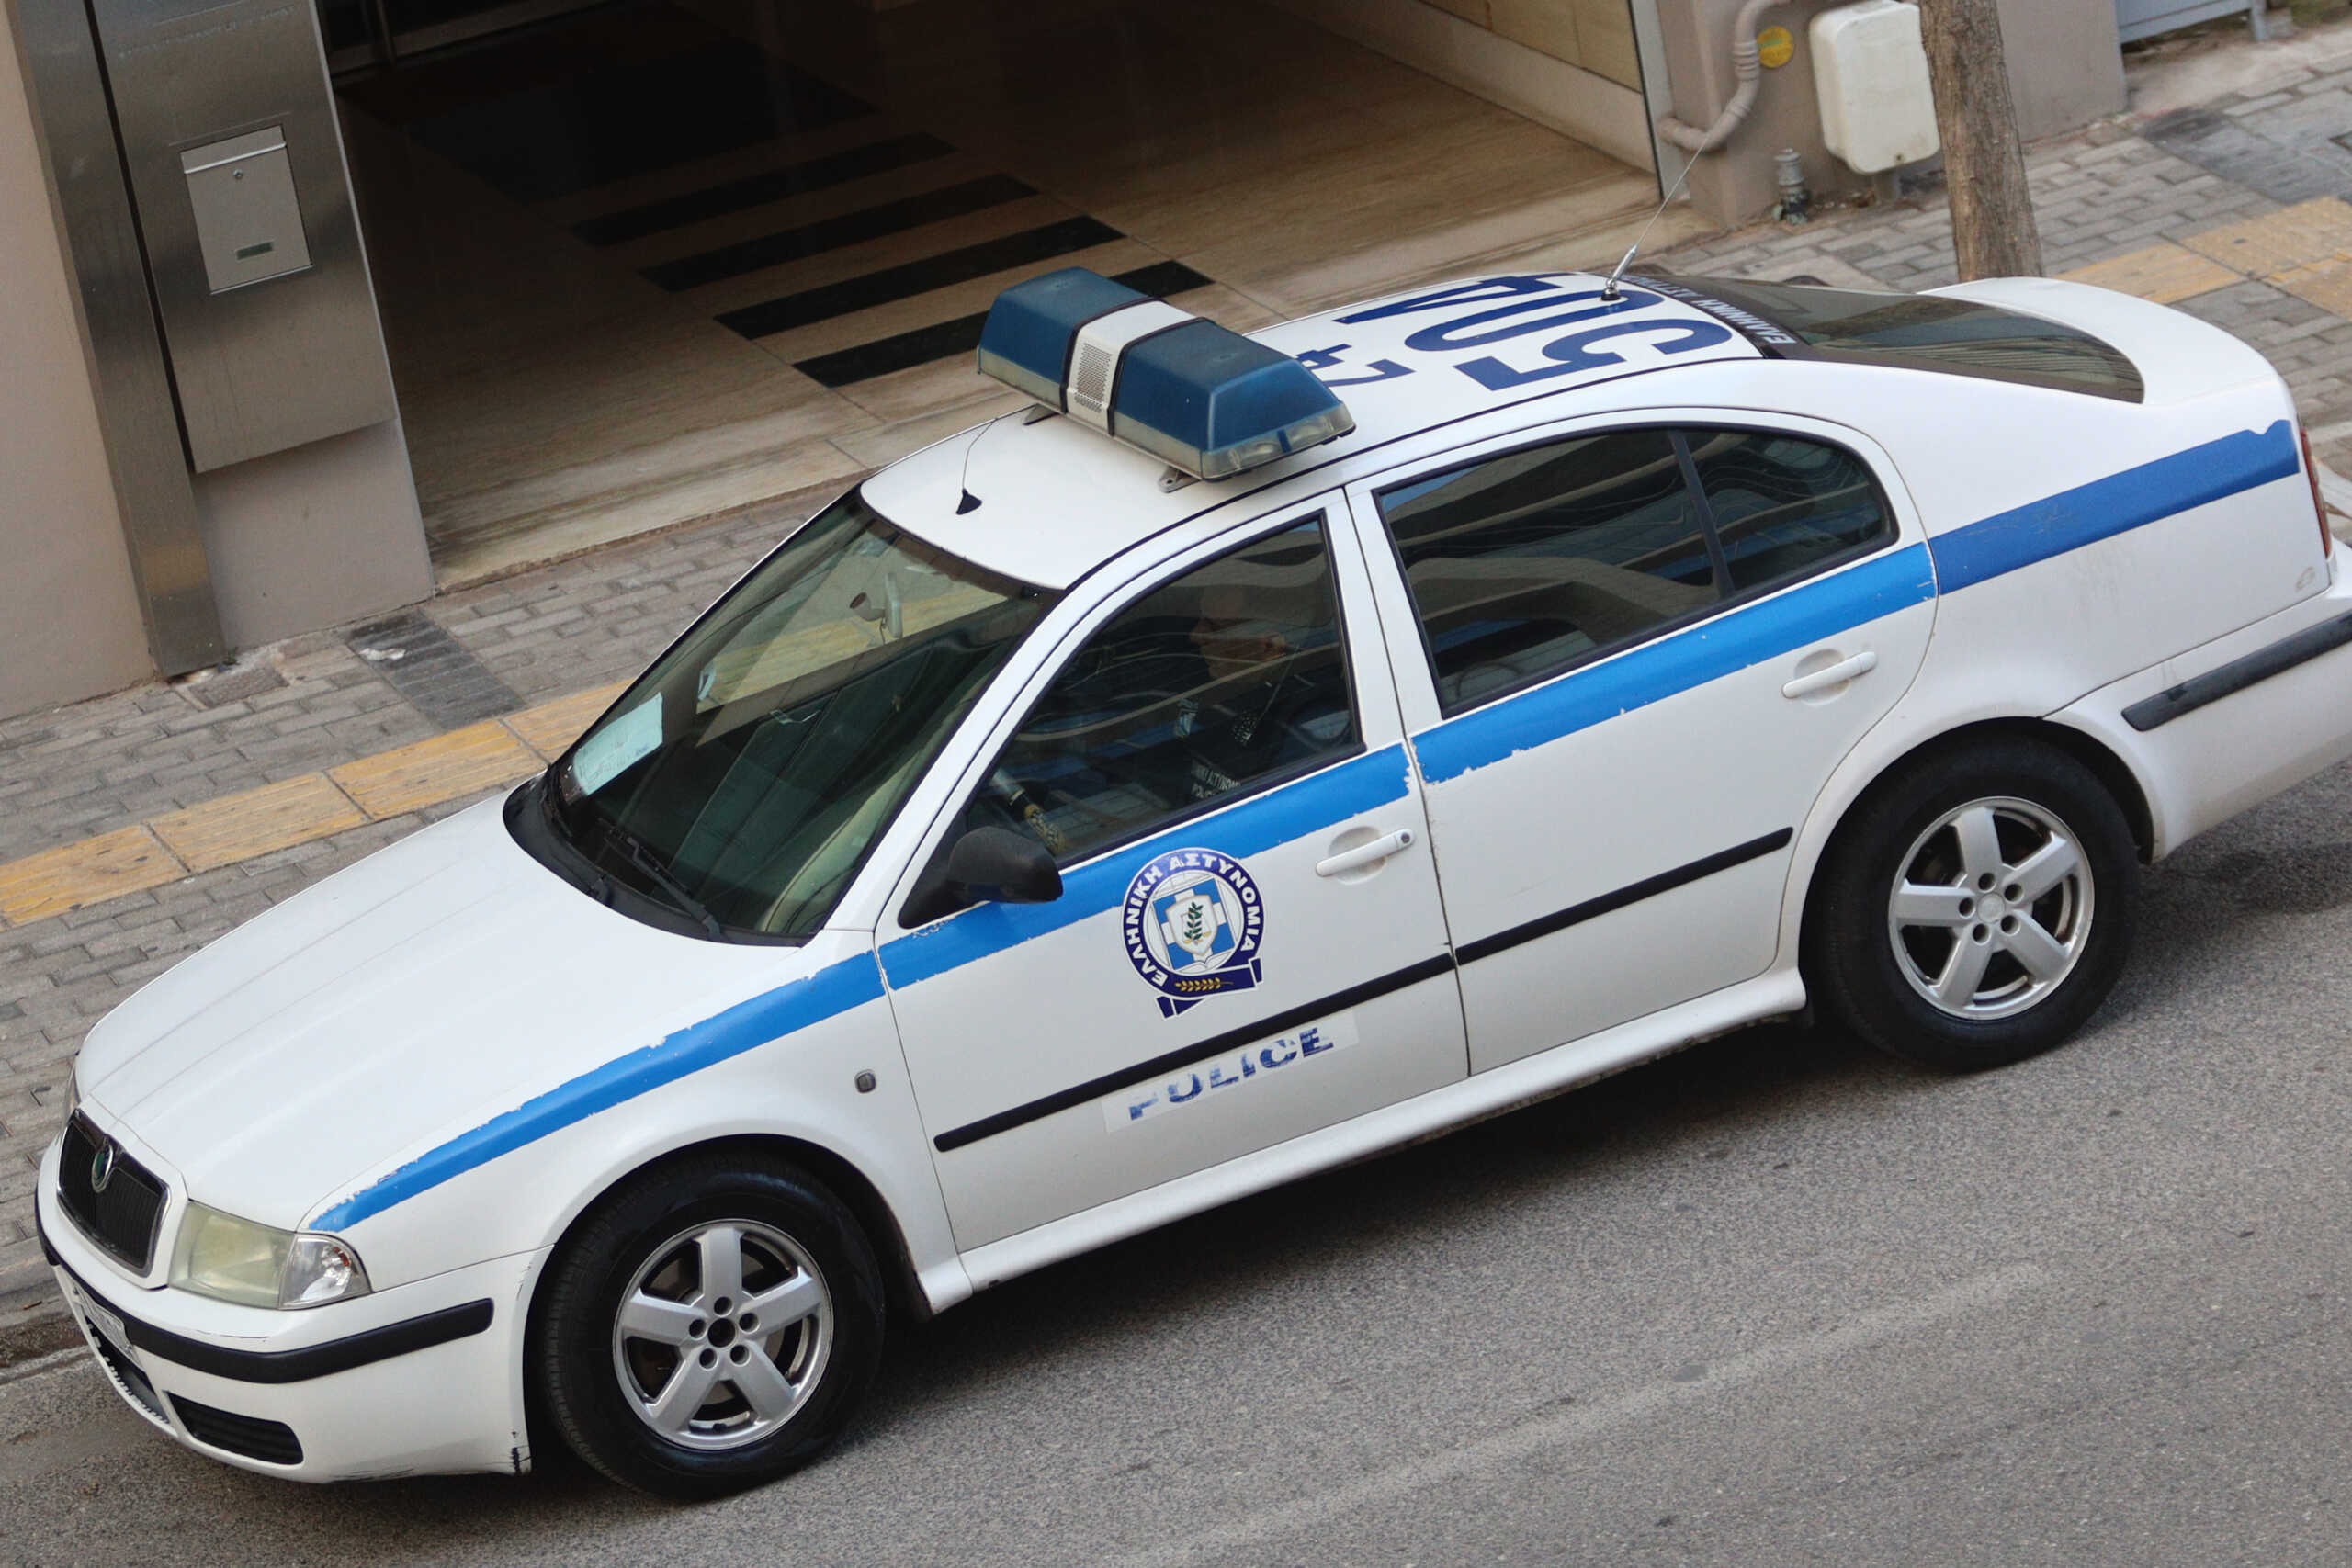 Θεσσαλονίκη: Συνελήφθη 59χρονος που δήλωνε «Εθνικός Εισαγγελέας» και απειλούσε ότι θα χρησιμοποιήσει όπλα